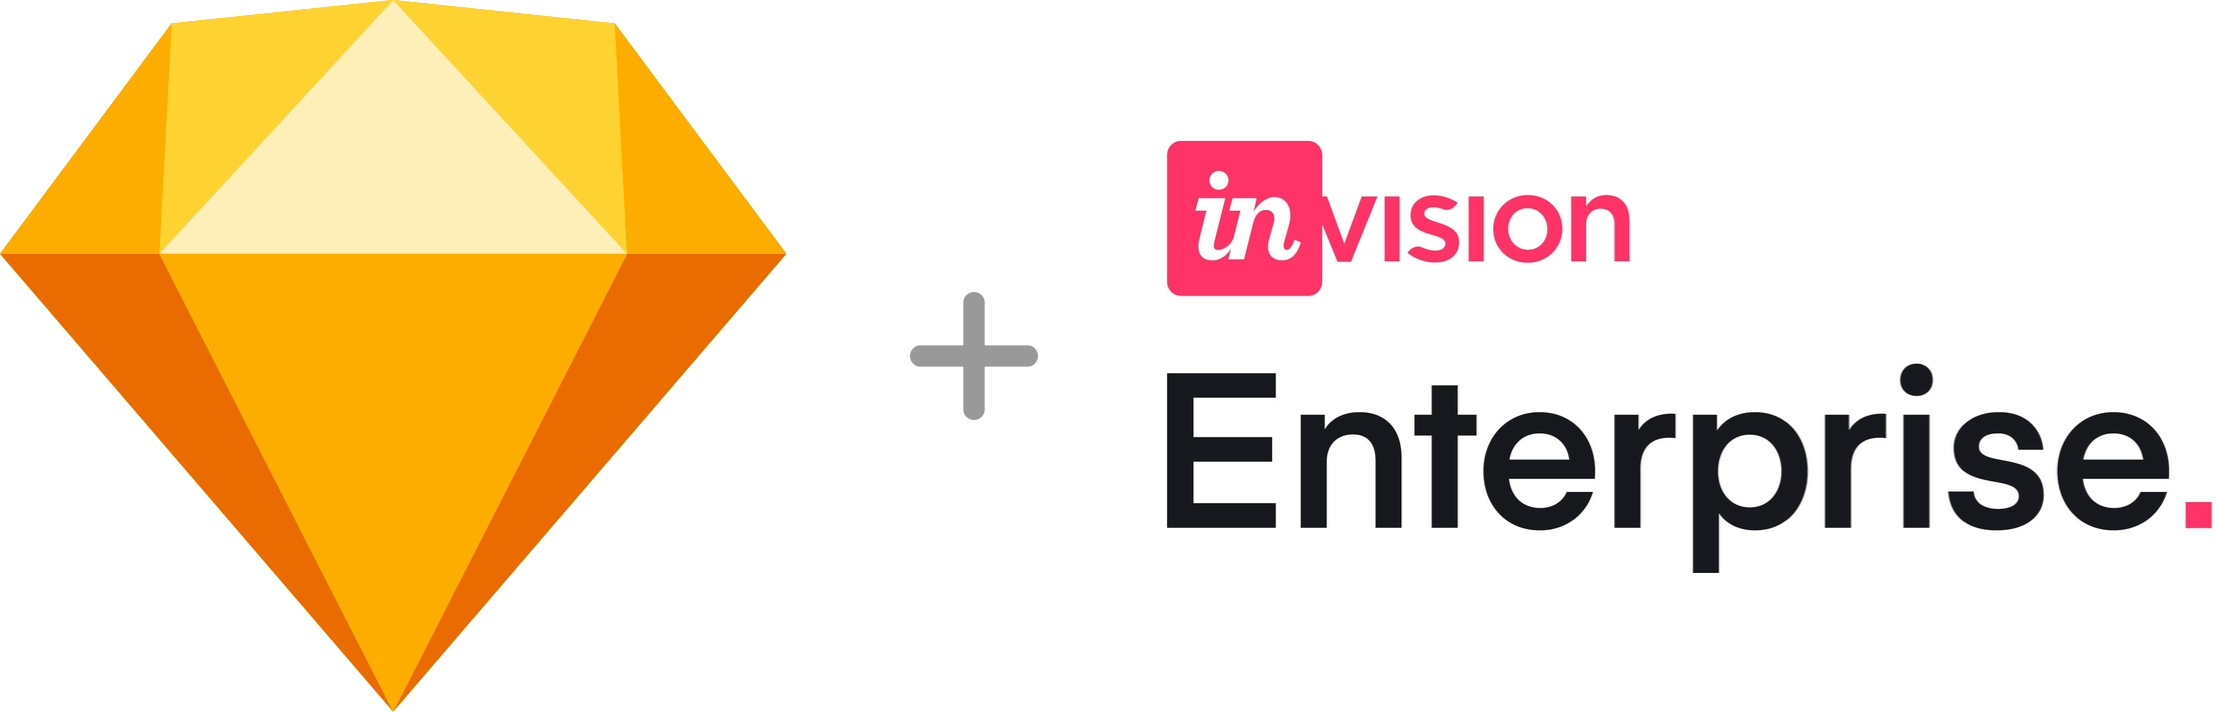 Sketch + Invision Enterprise